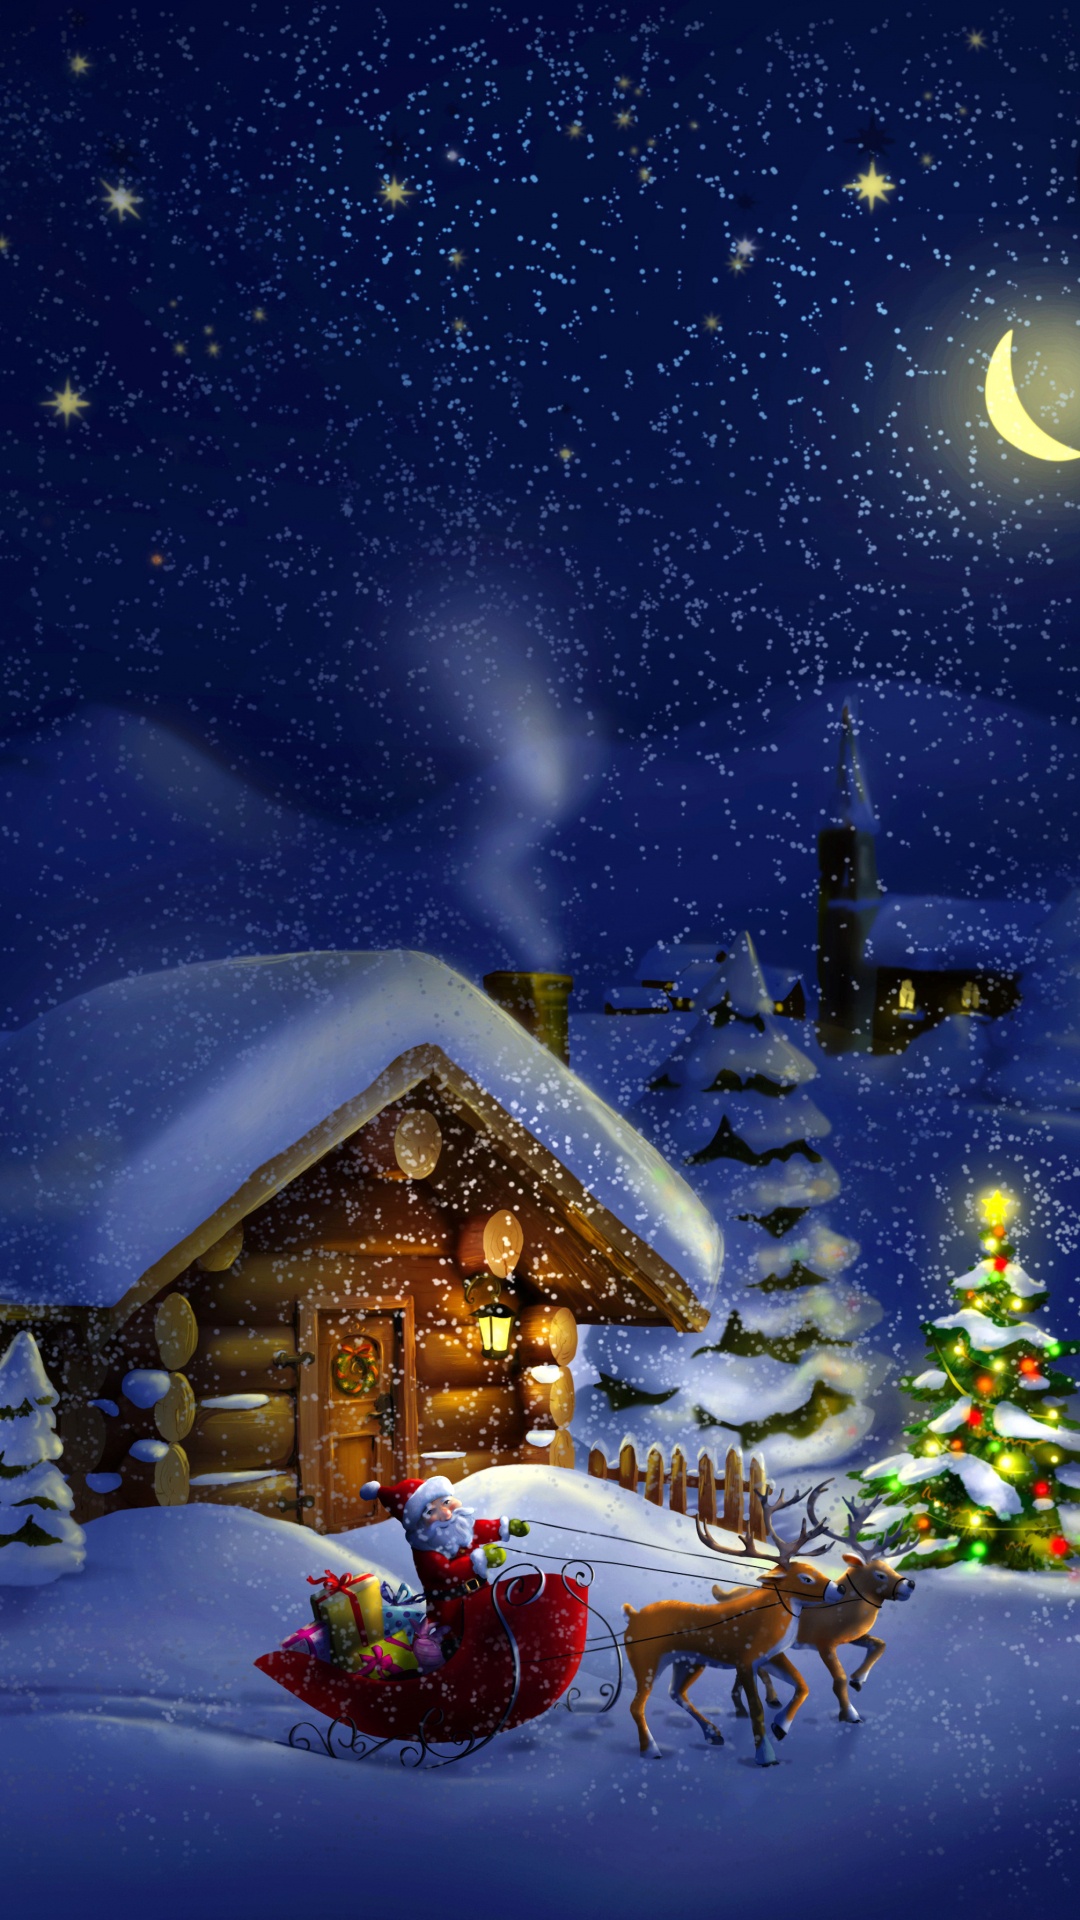 Weihnachten, Weihnachtsmann, Winter, Schnee, Nacht. Wallpaper in 1080x1920 Resolution